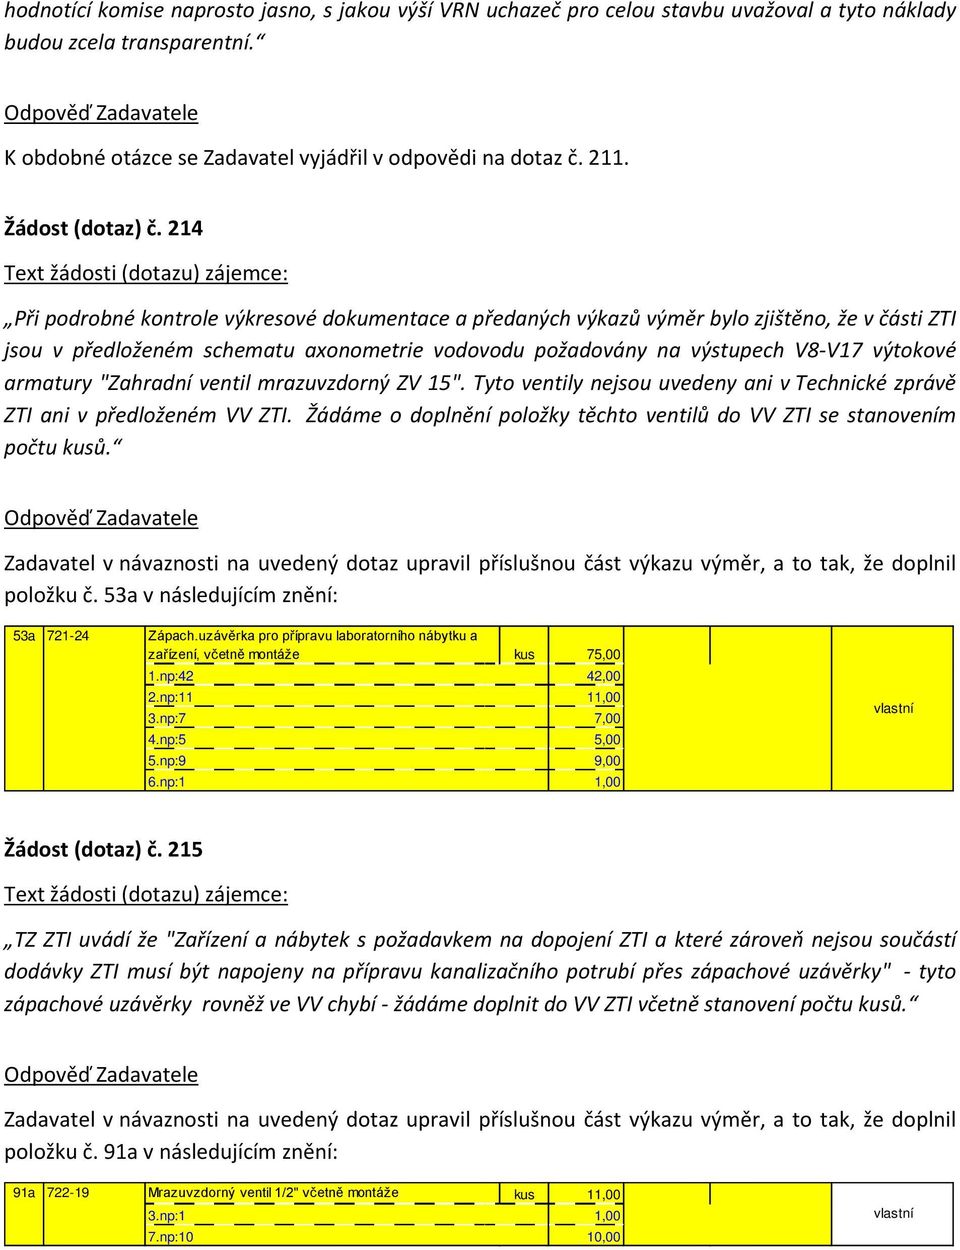 214 Při podrobné kontrole výkresové dokumentace a předaných výkazů výměr bylo zjištěno, že v části ZTI jsou v předloženém schematu axonometrie vodovodu požadovány na výstupech V8V17 výtokové armatury